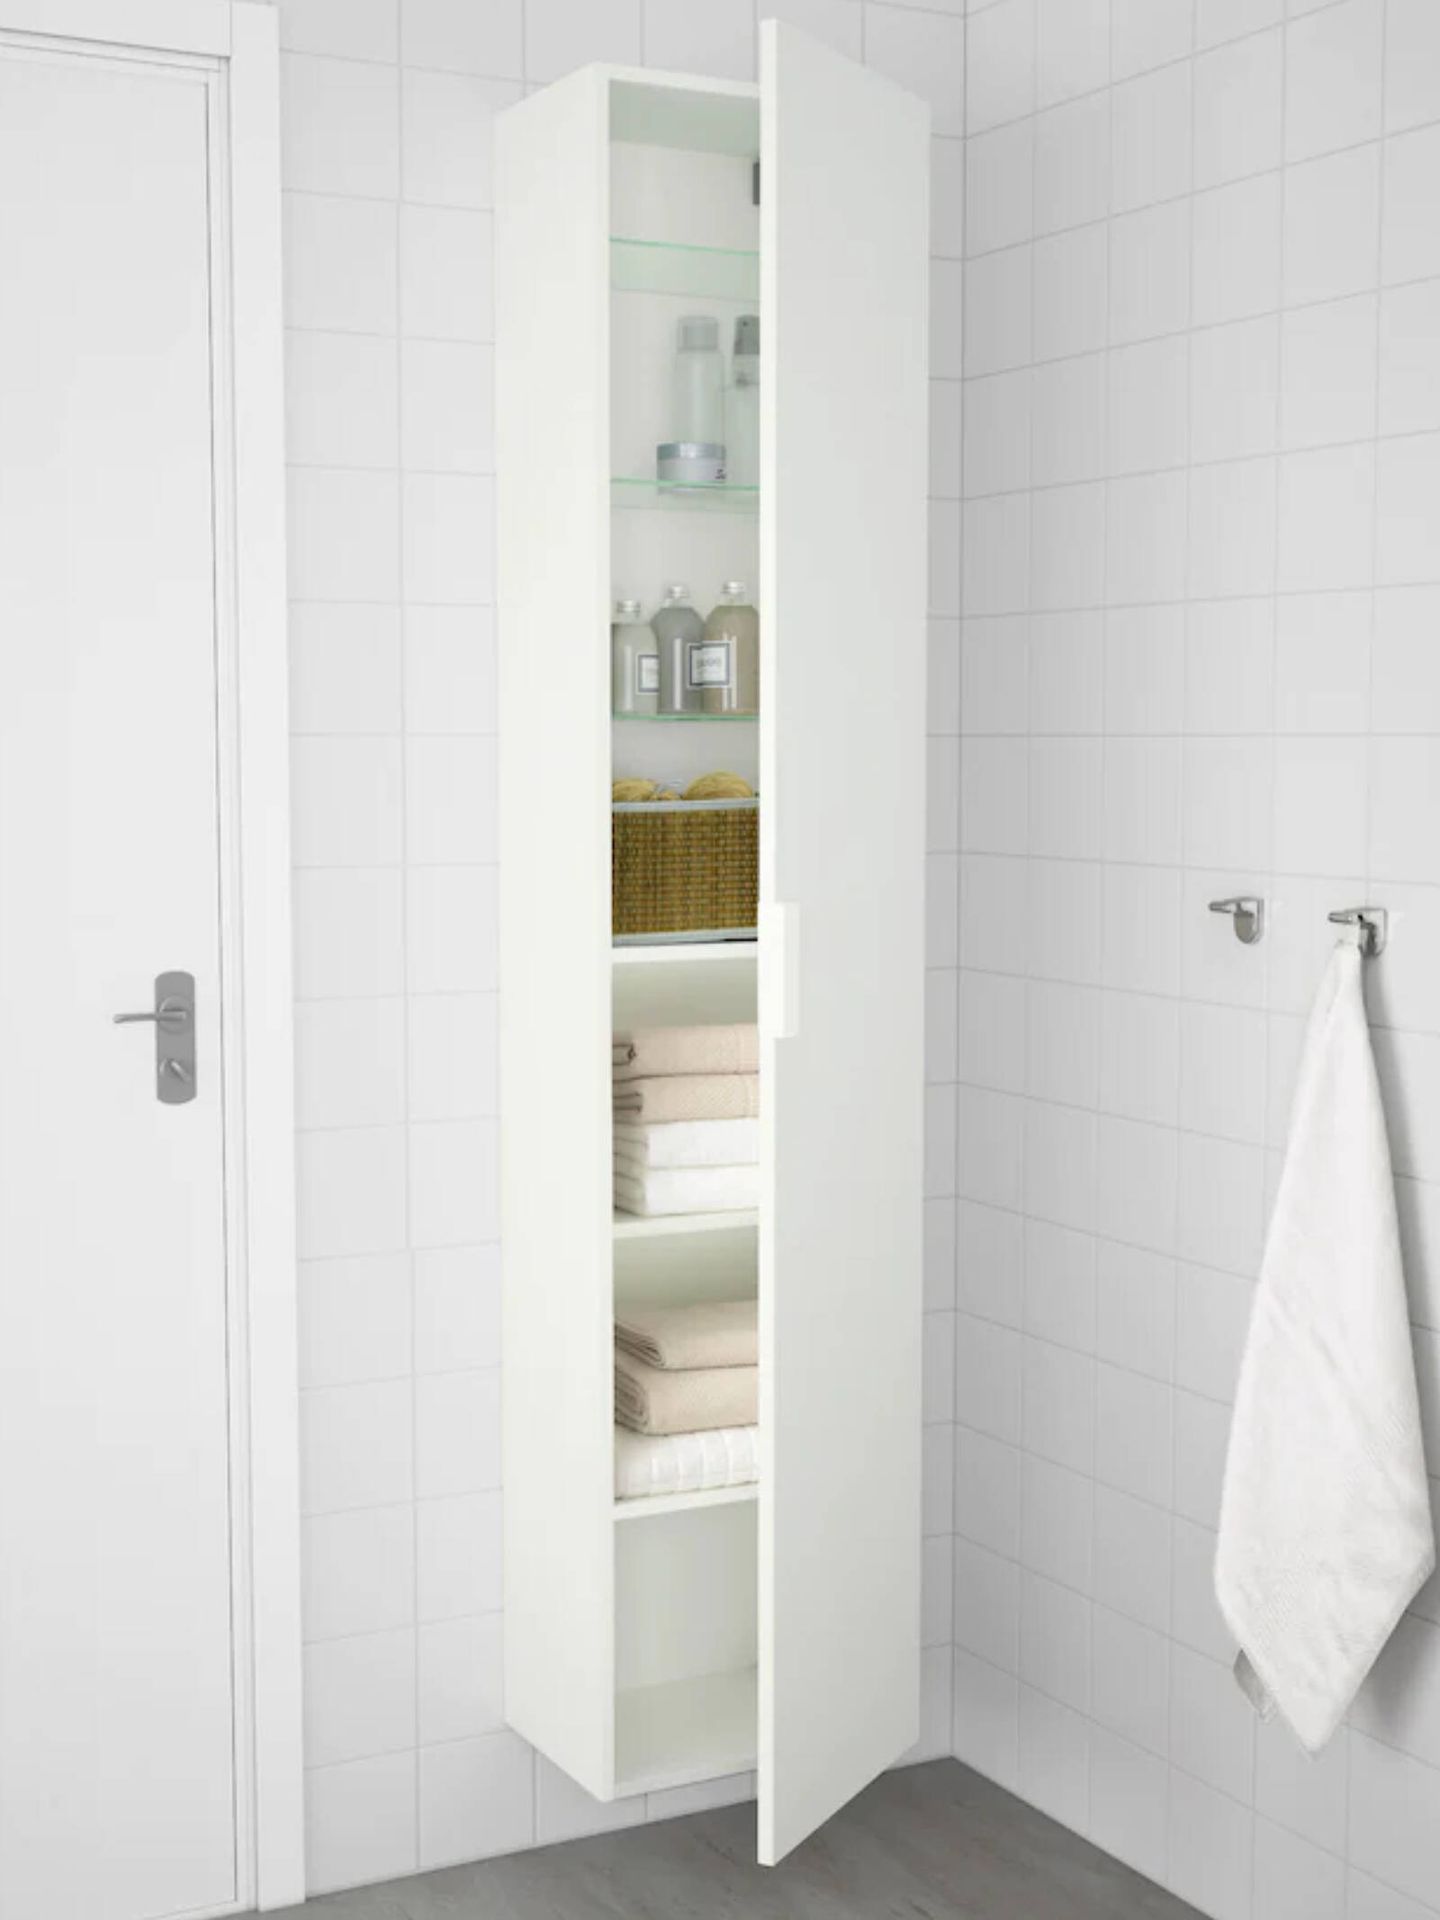 Prepara tu baño para estas fiestas con estas soluciones de Ikea. (Cortesía/Ikea)